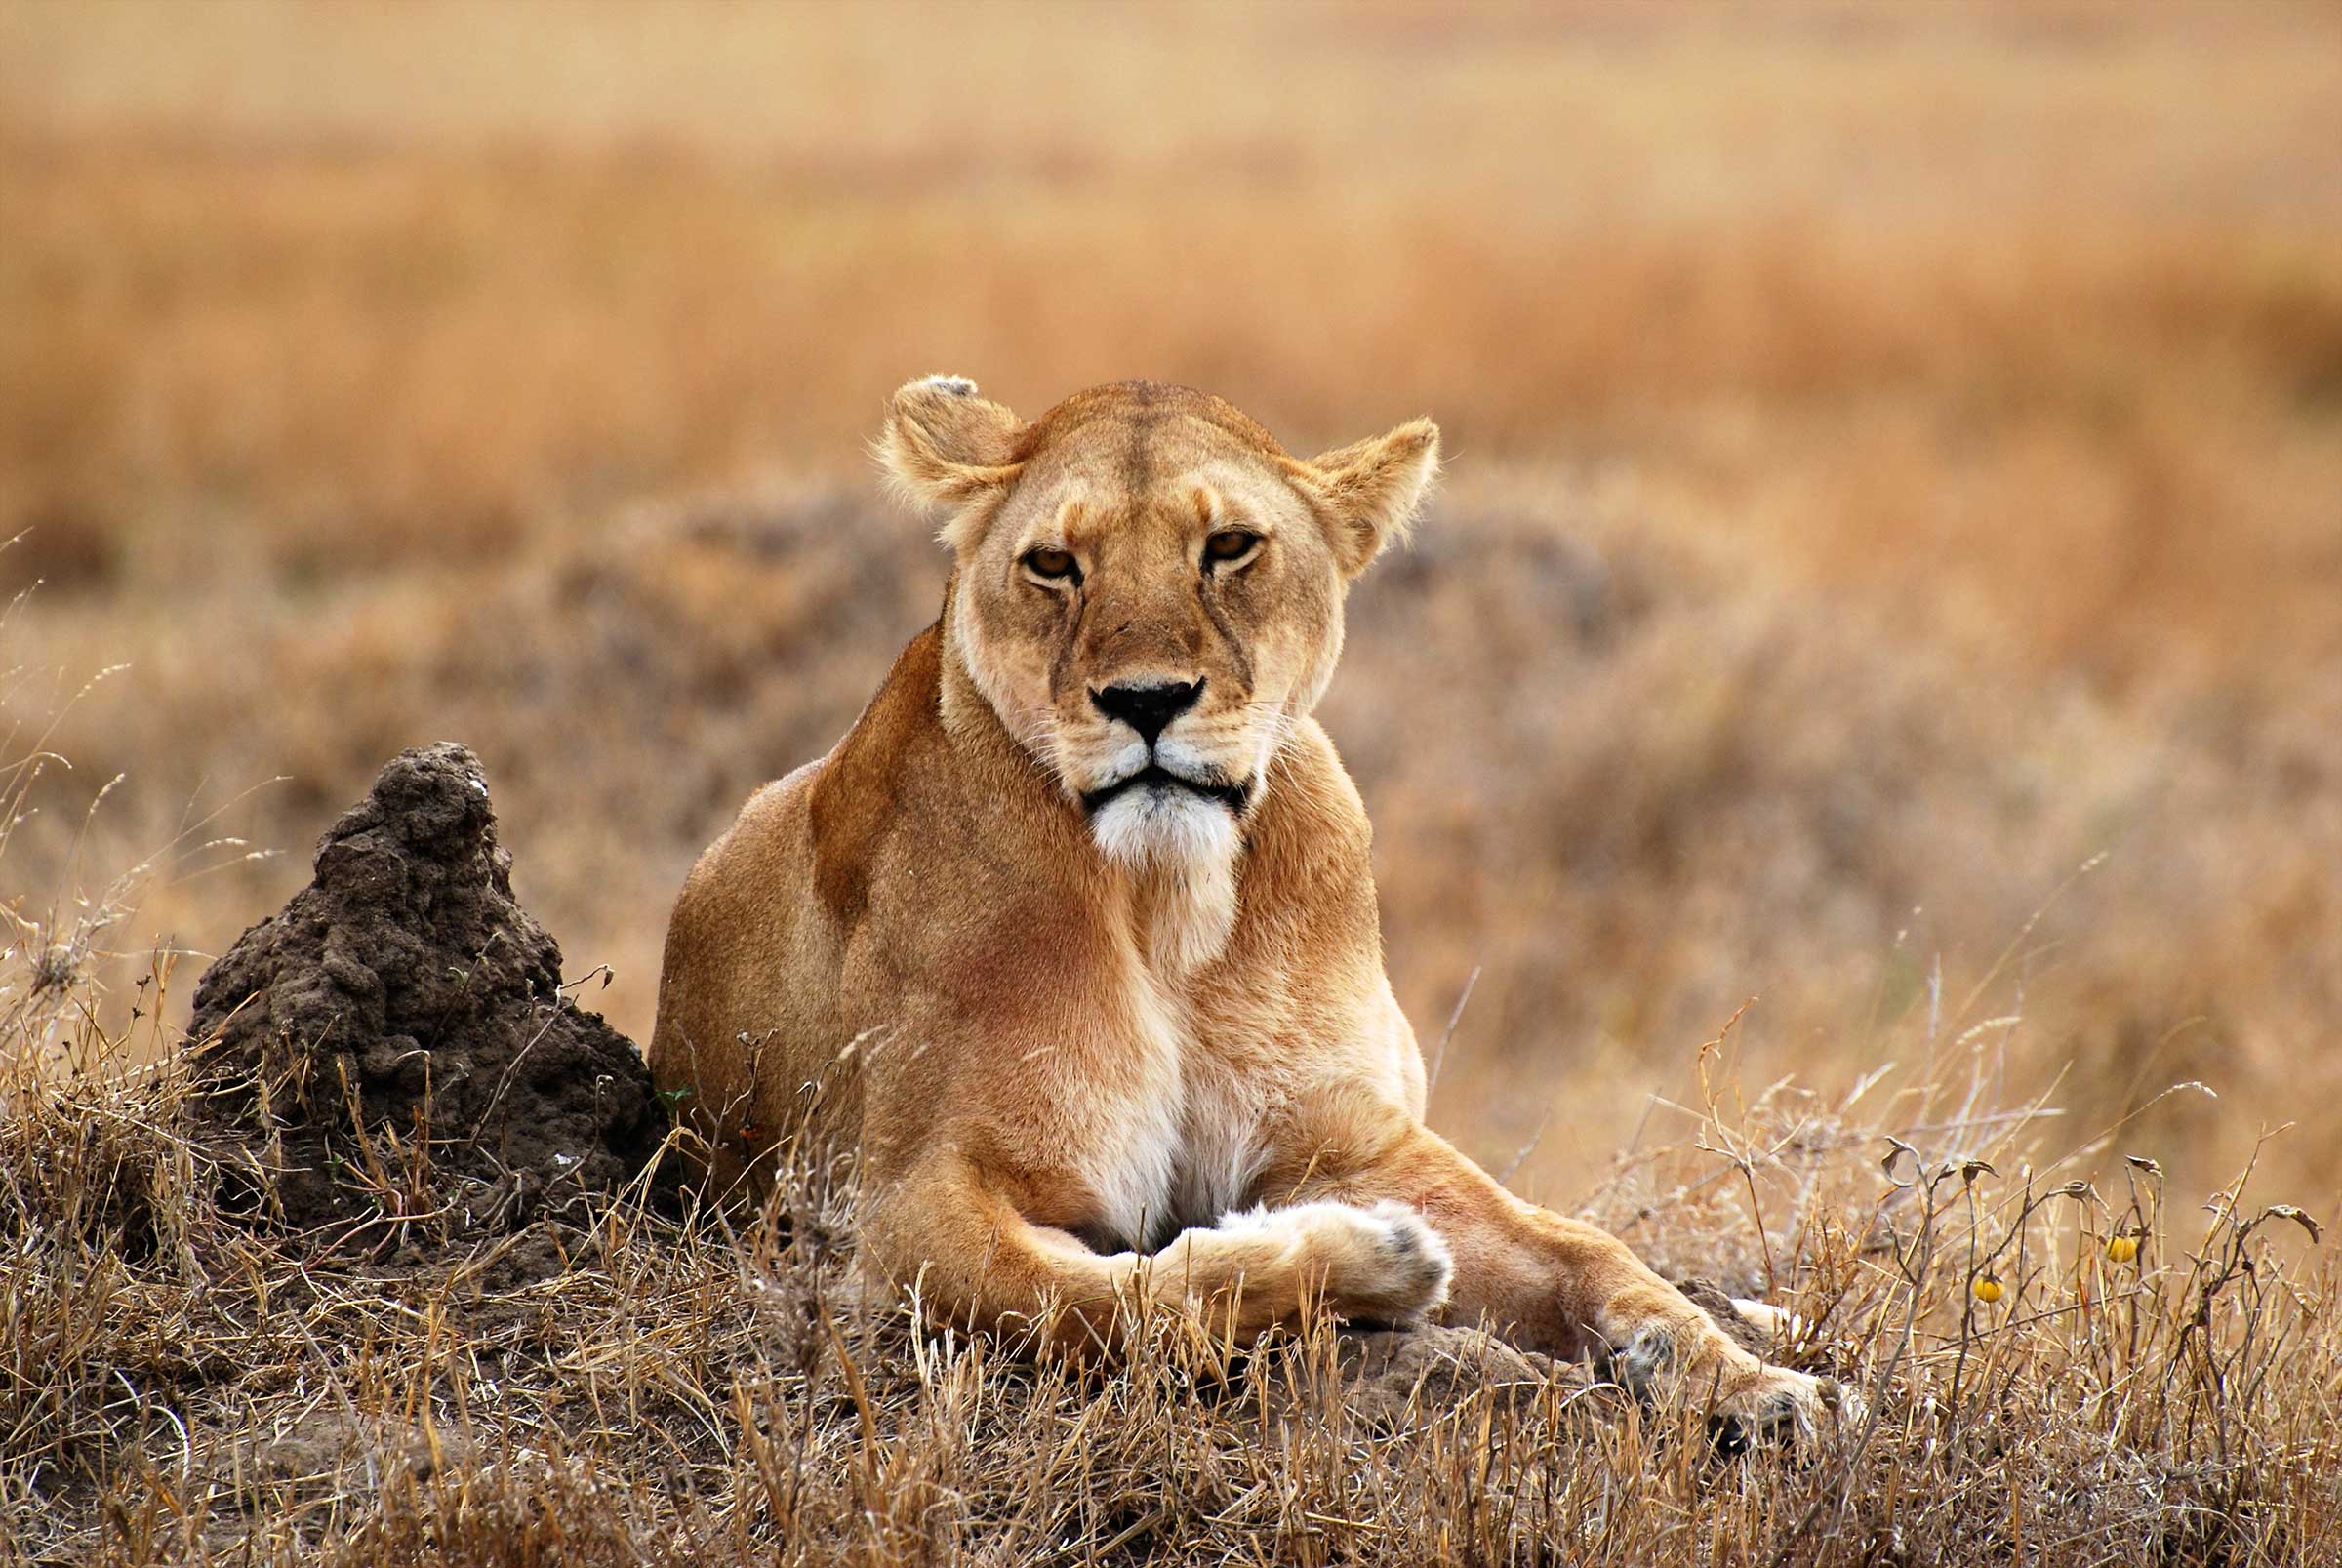 lion on safari in tanzania